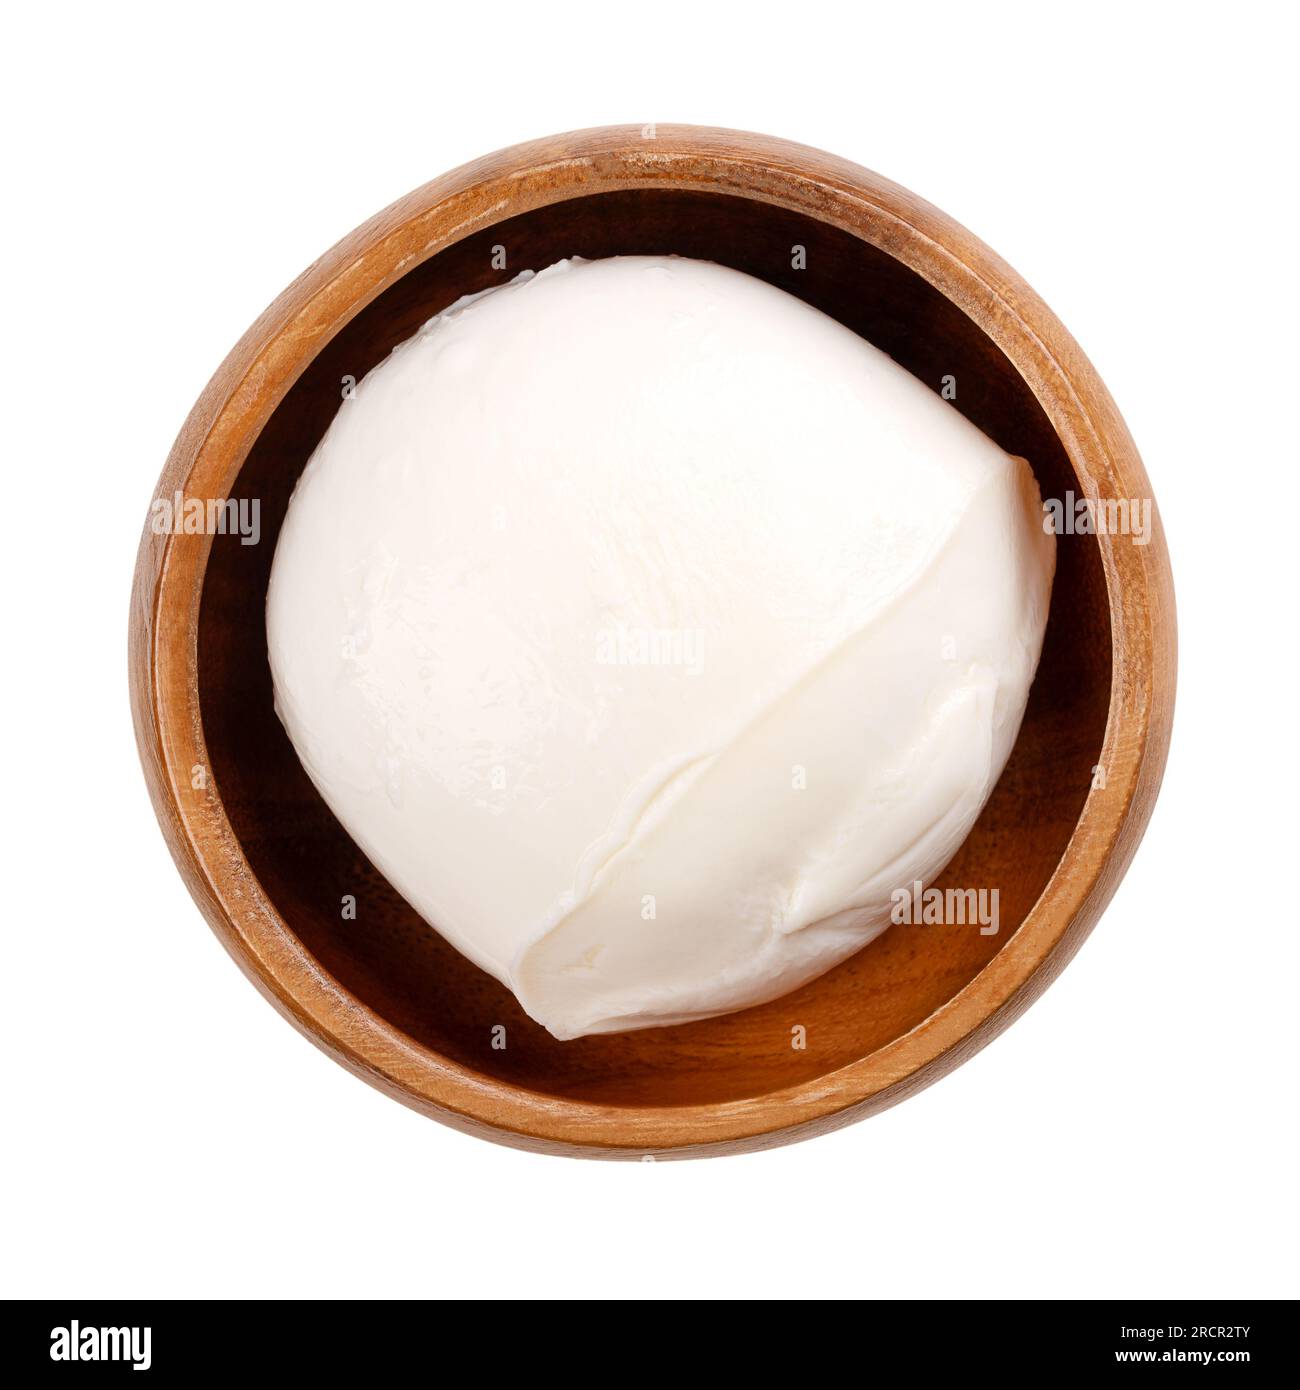 Großer Mozzarella-Ball, in einer Holzschüssel. Süditalienischer Frischkäse aus Milch nach der Pasta-filata-Methode. Wird für Pizza usw. verwendet Stockfoto